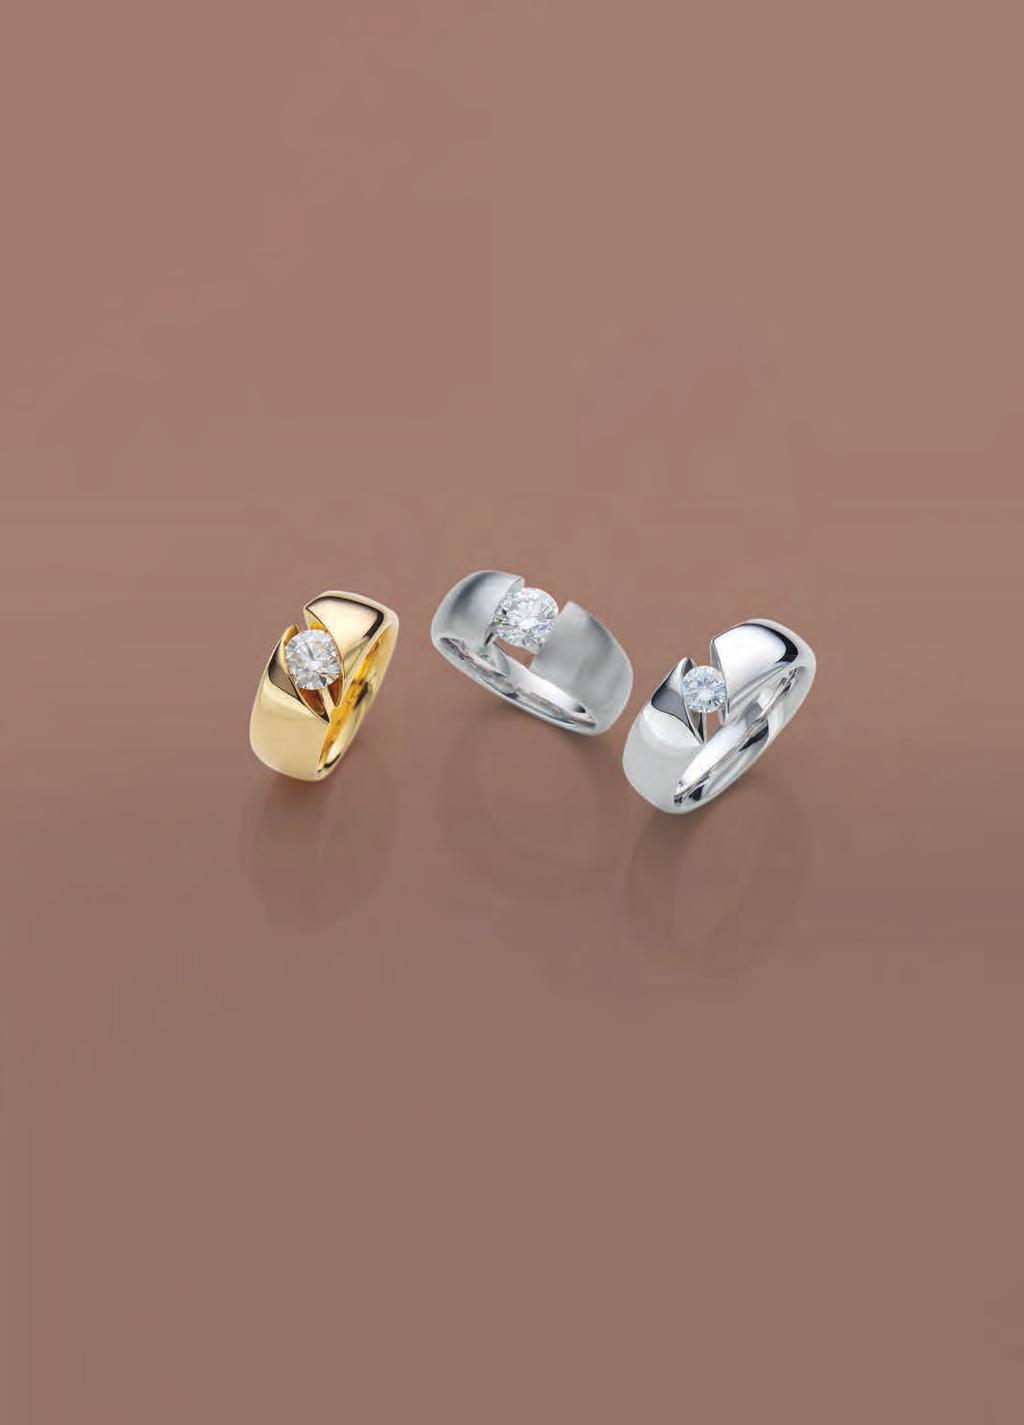 JASPER ATELIER SPANNRINGE Ring, 750/- Gelbgold, Diamant 1,10 ct 8.